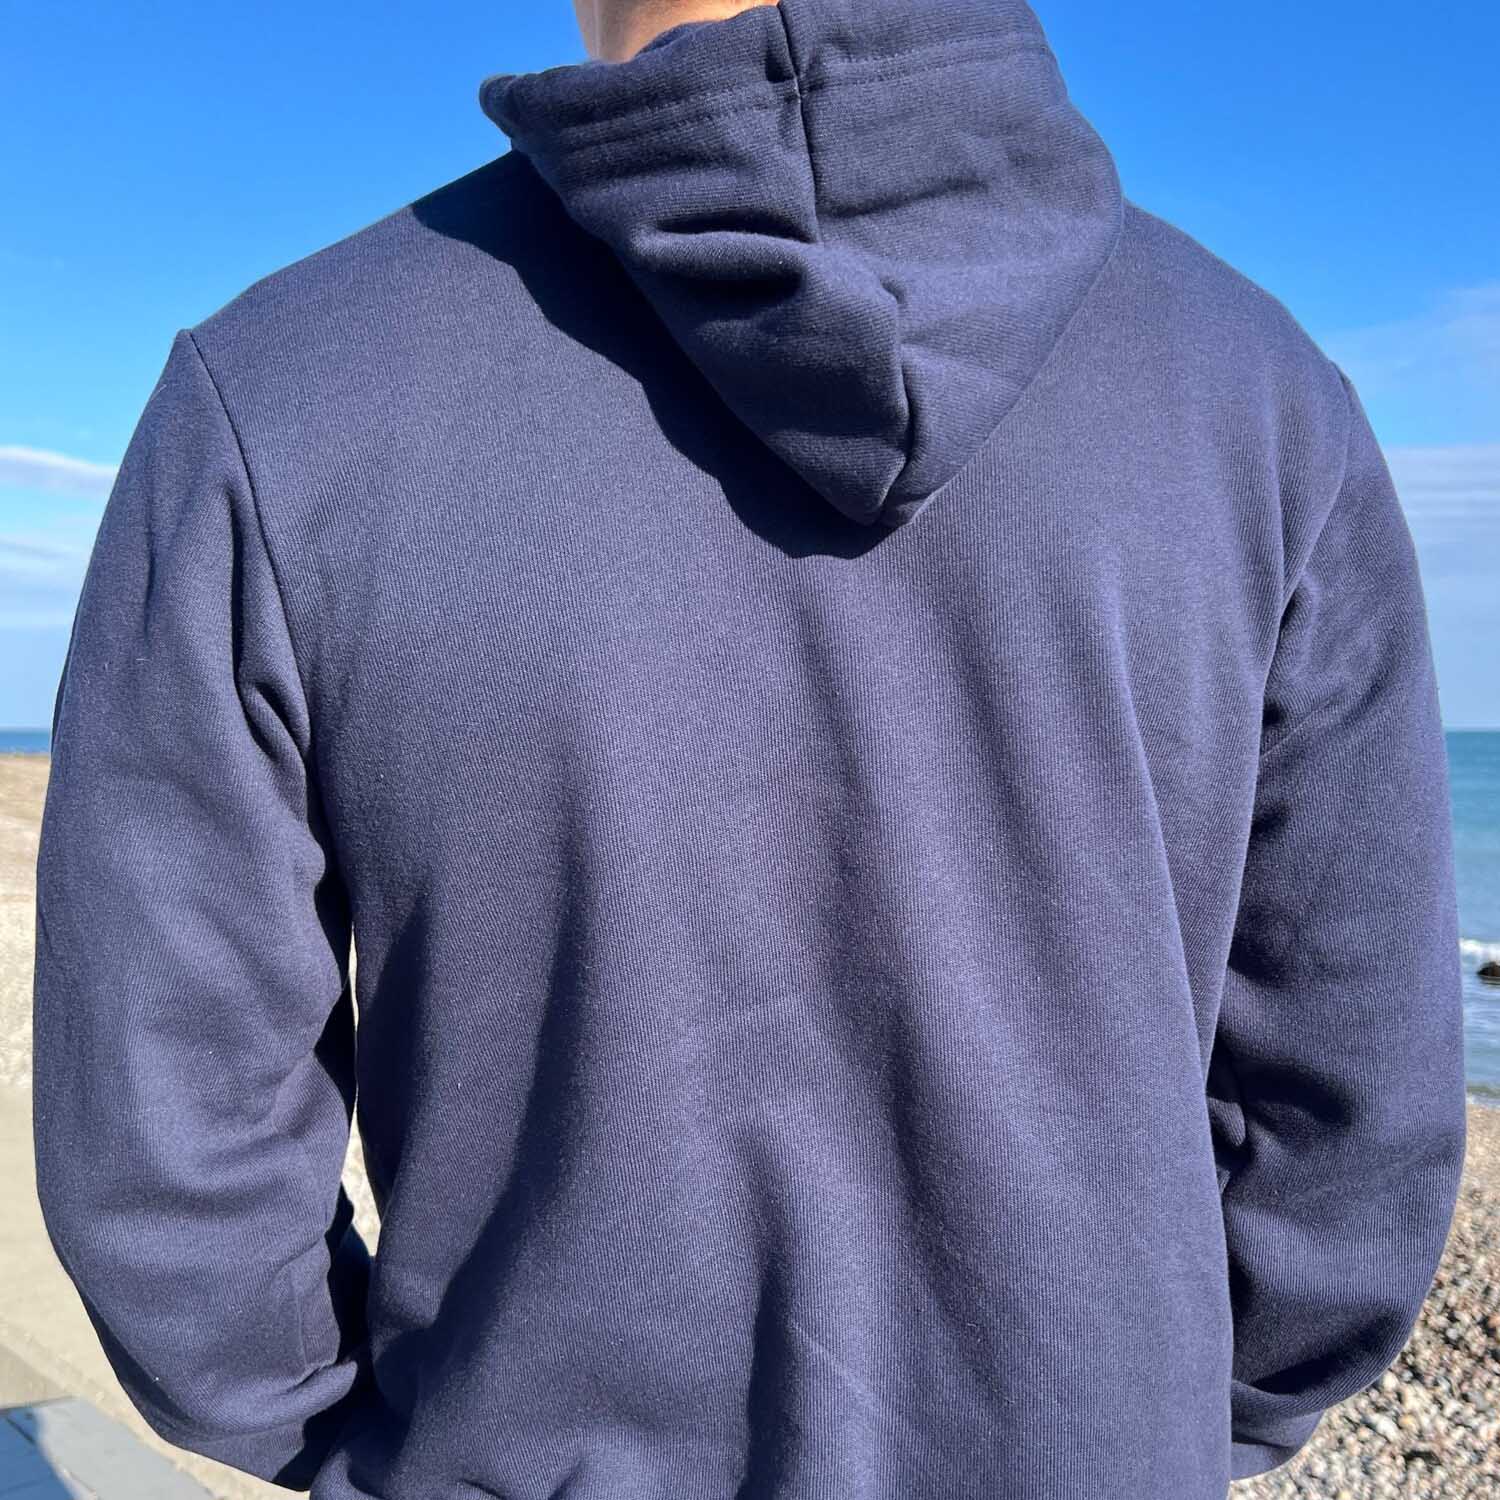 Coastal Coffee Company Sweatshirt